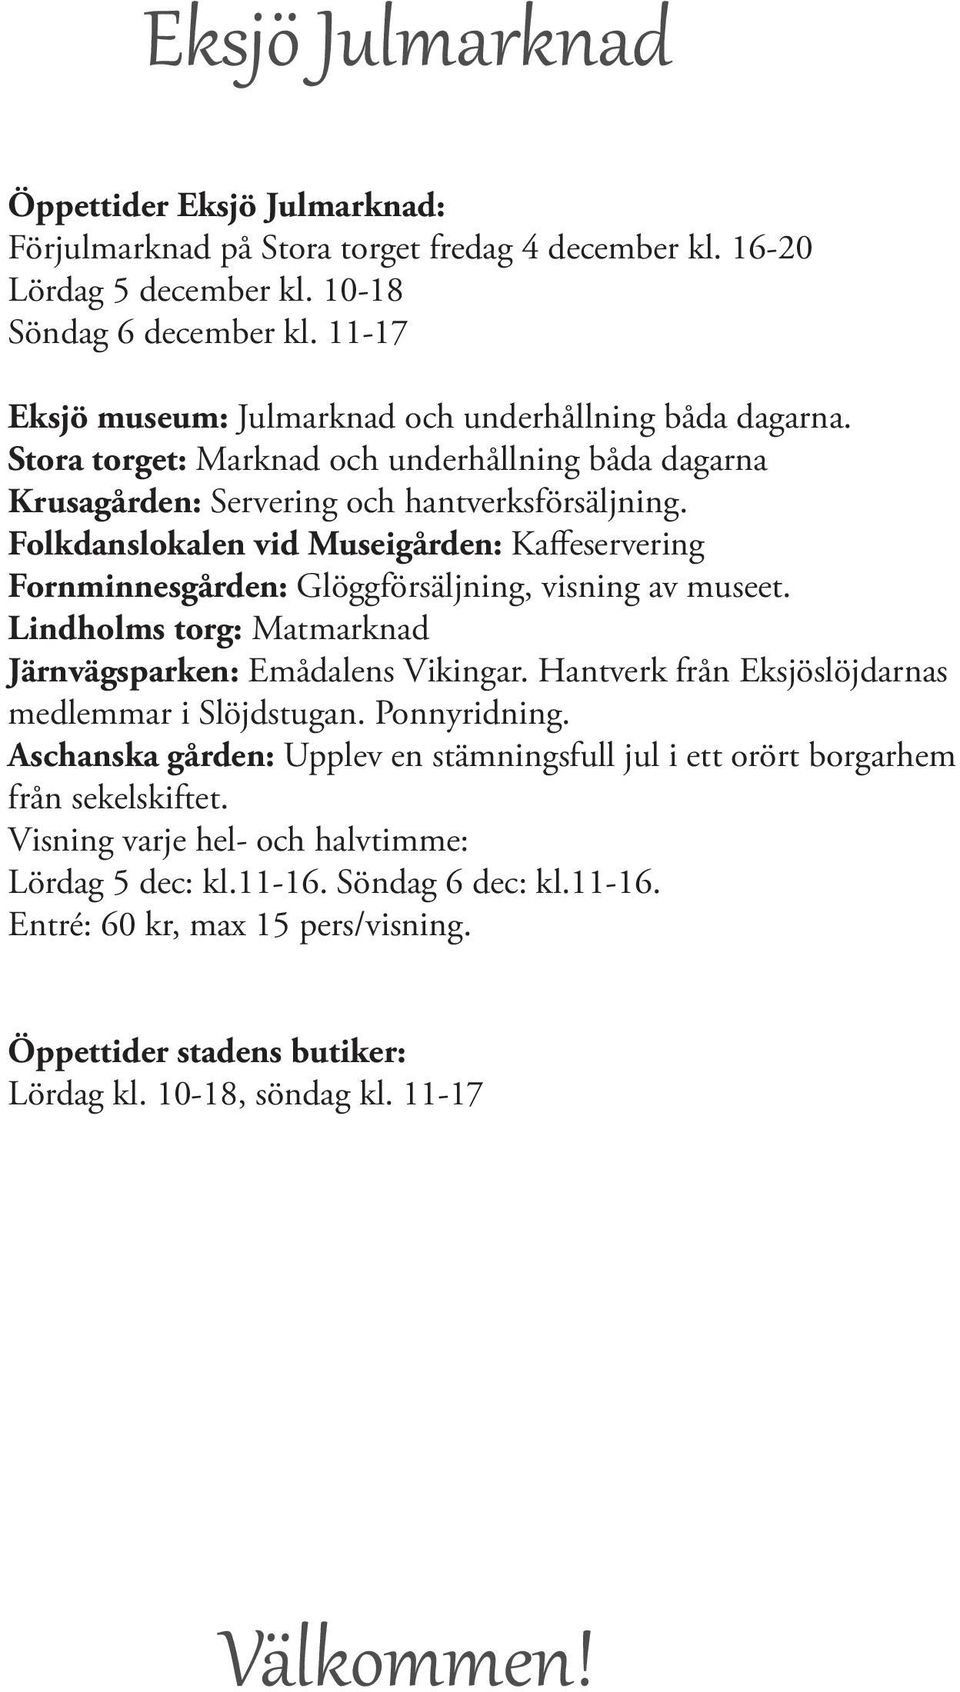 Folkdaslokale vid Museigårde: Kaffeserverig Formiesgårde: Glöggförsäljig, visig av museet. Lidholms torg: Matmarkad Järvägsparke: Emådales Vikigar.